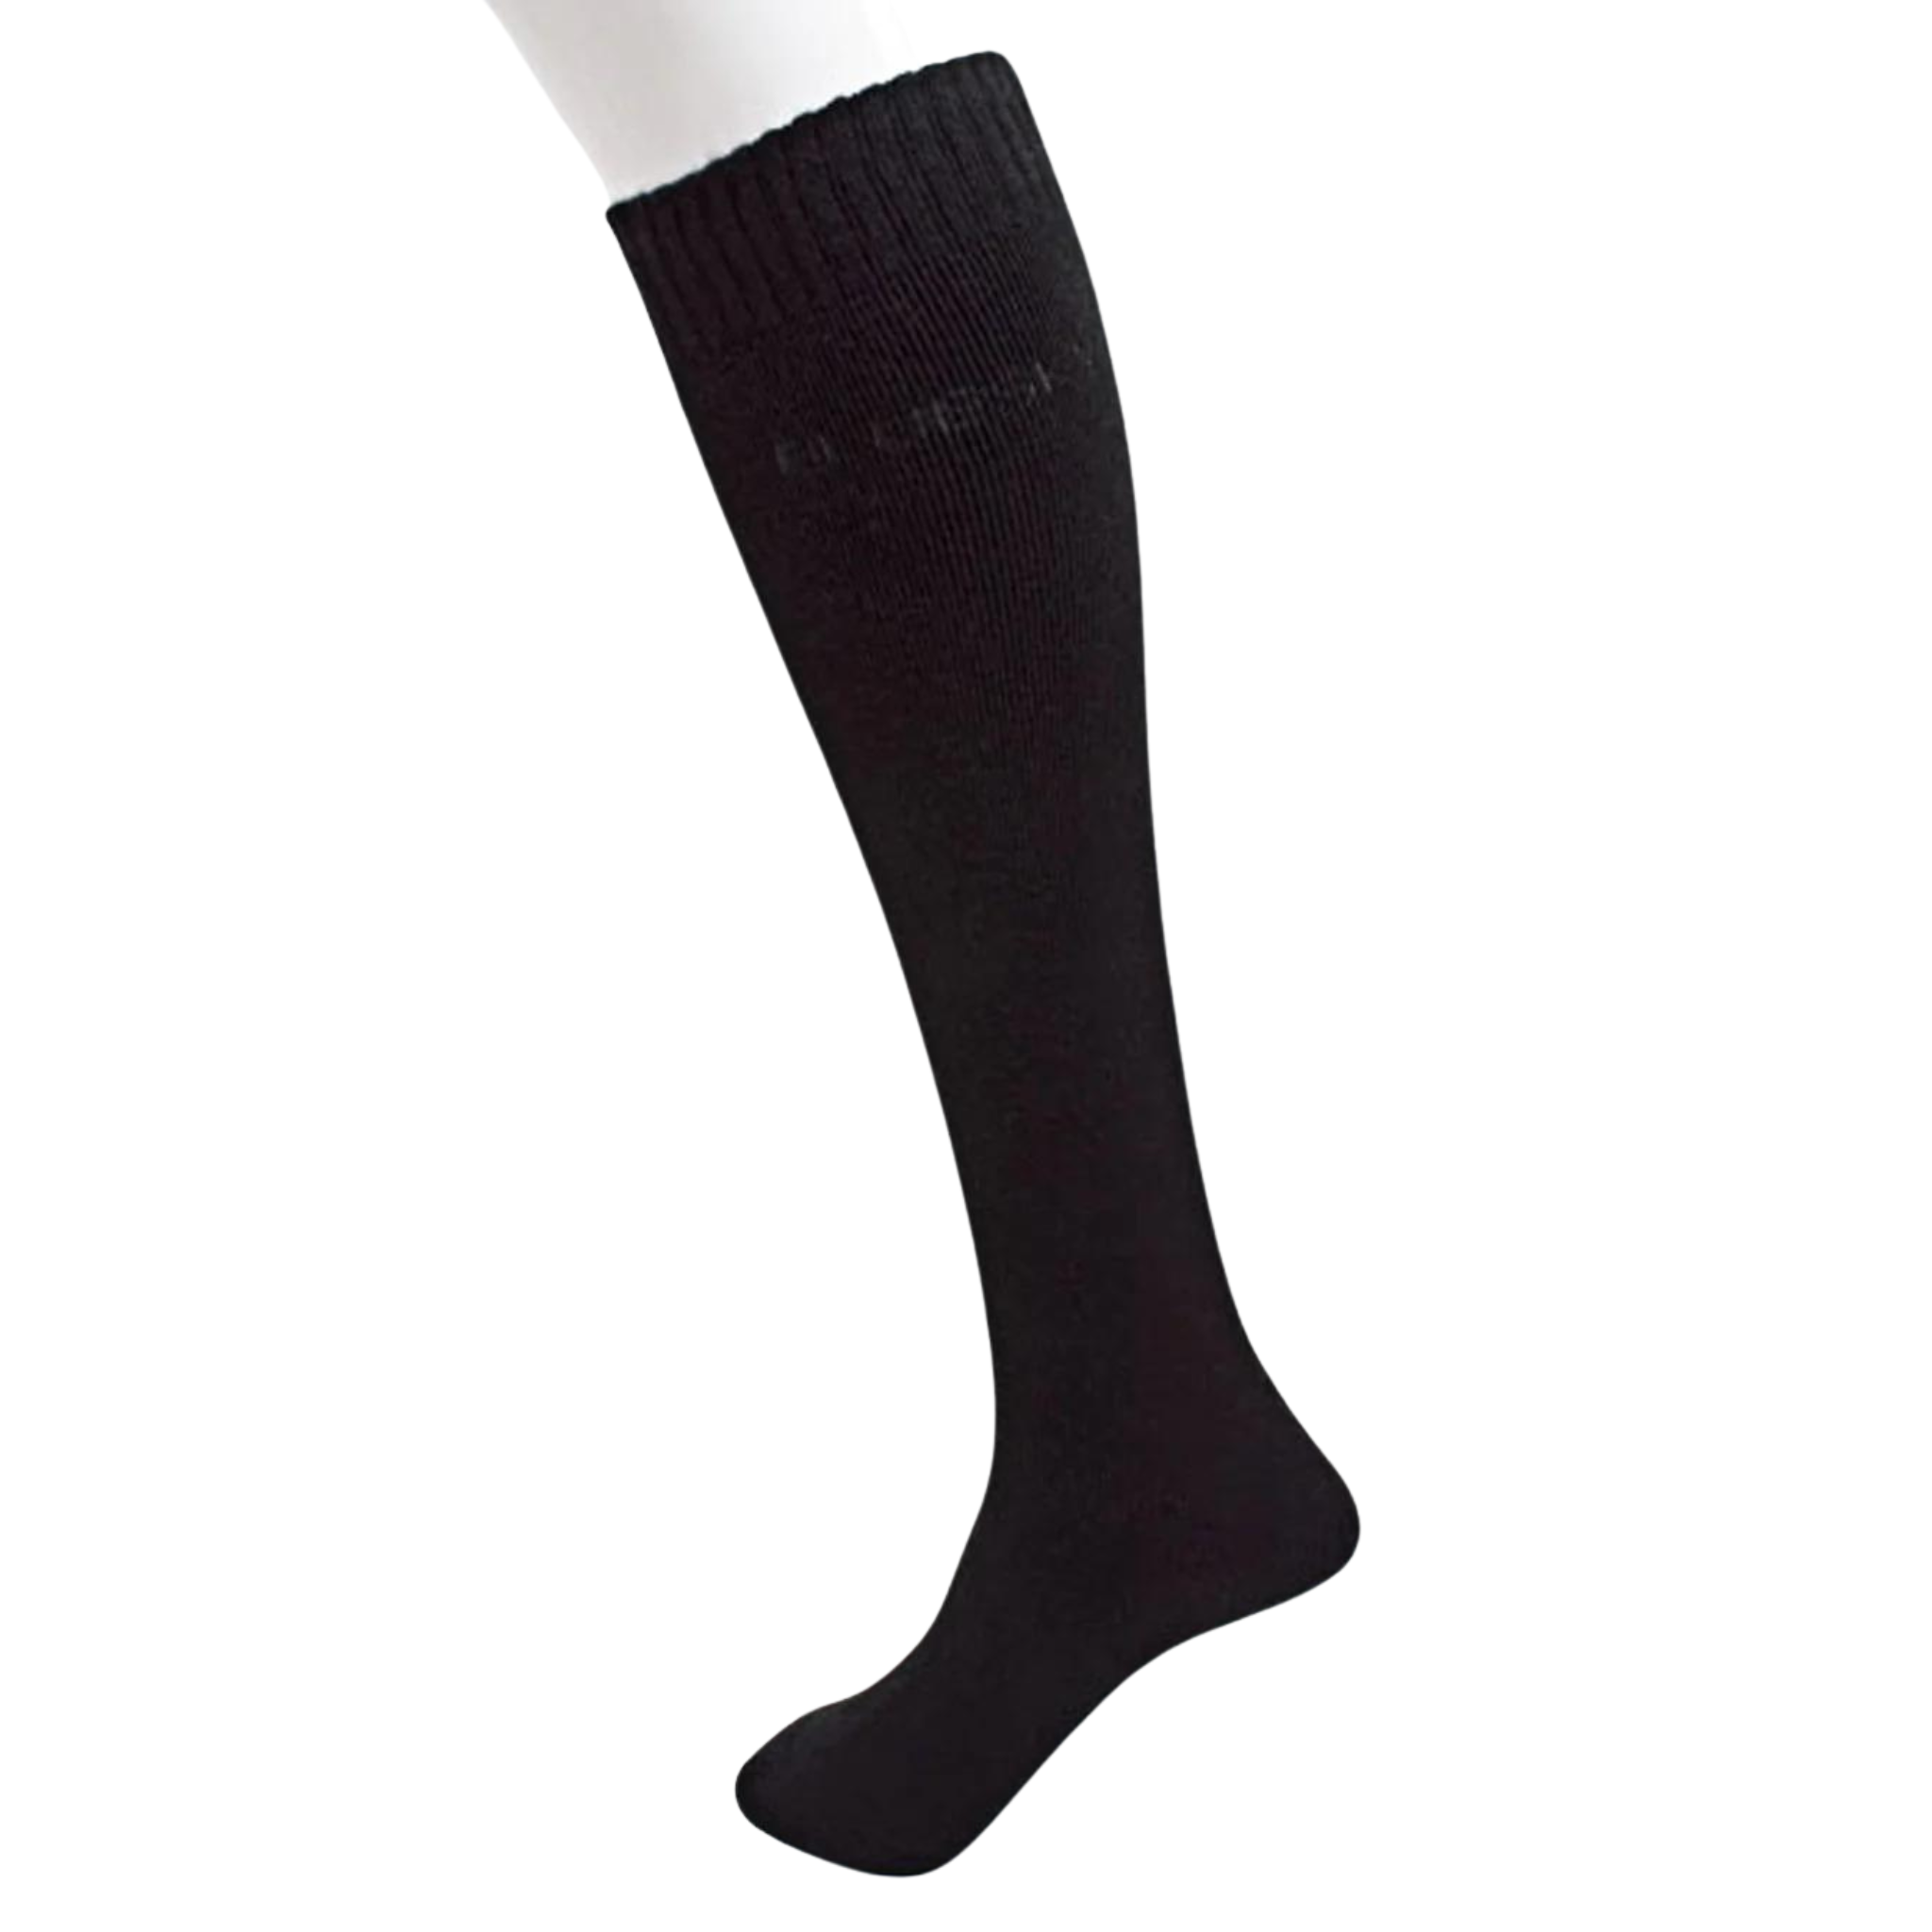 Merino Boot/Ski Socks